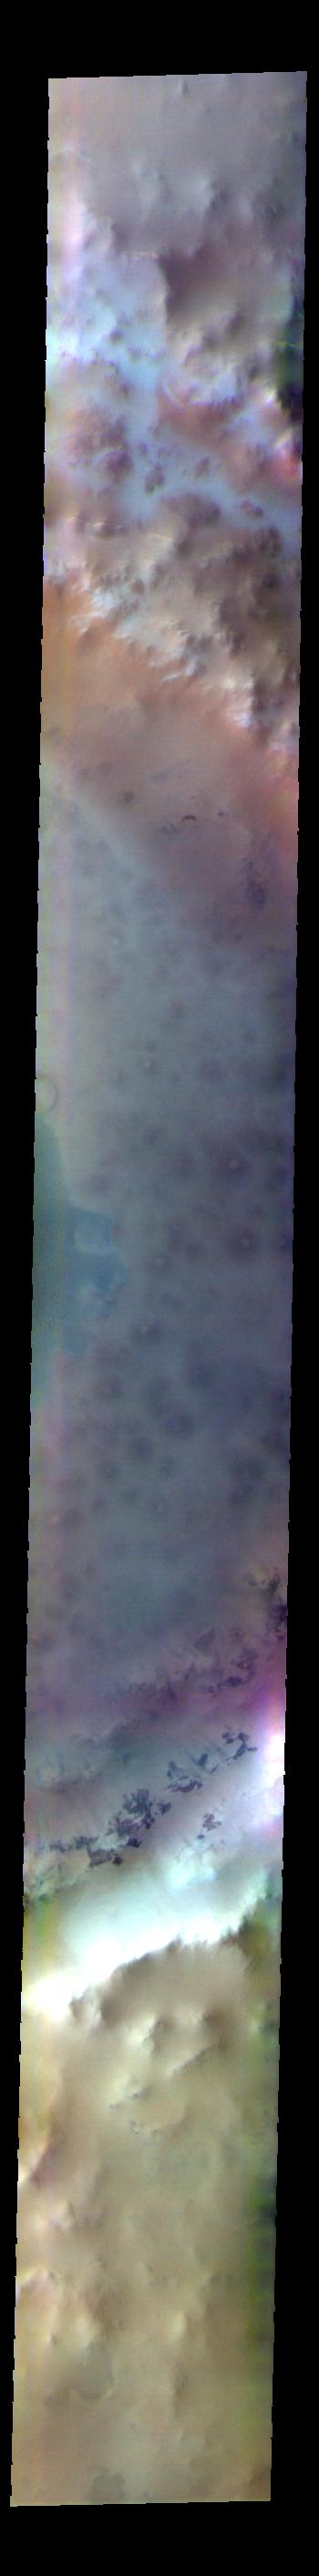 PIA25060: Lomonosov Crater - False Color